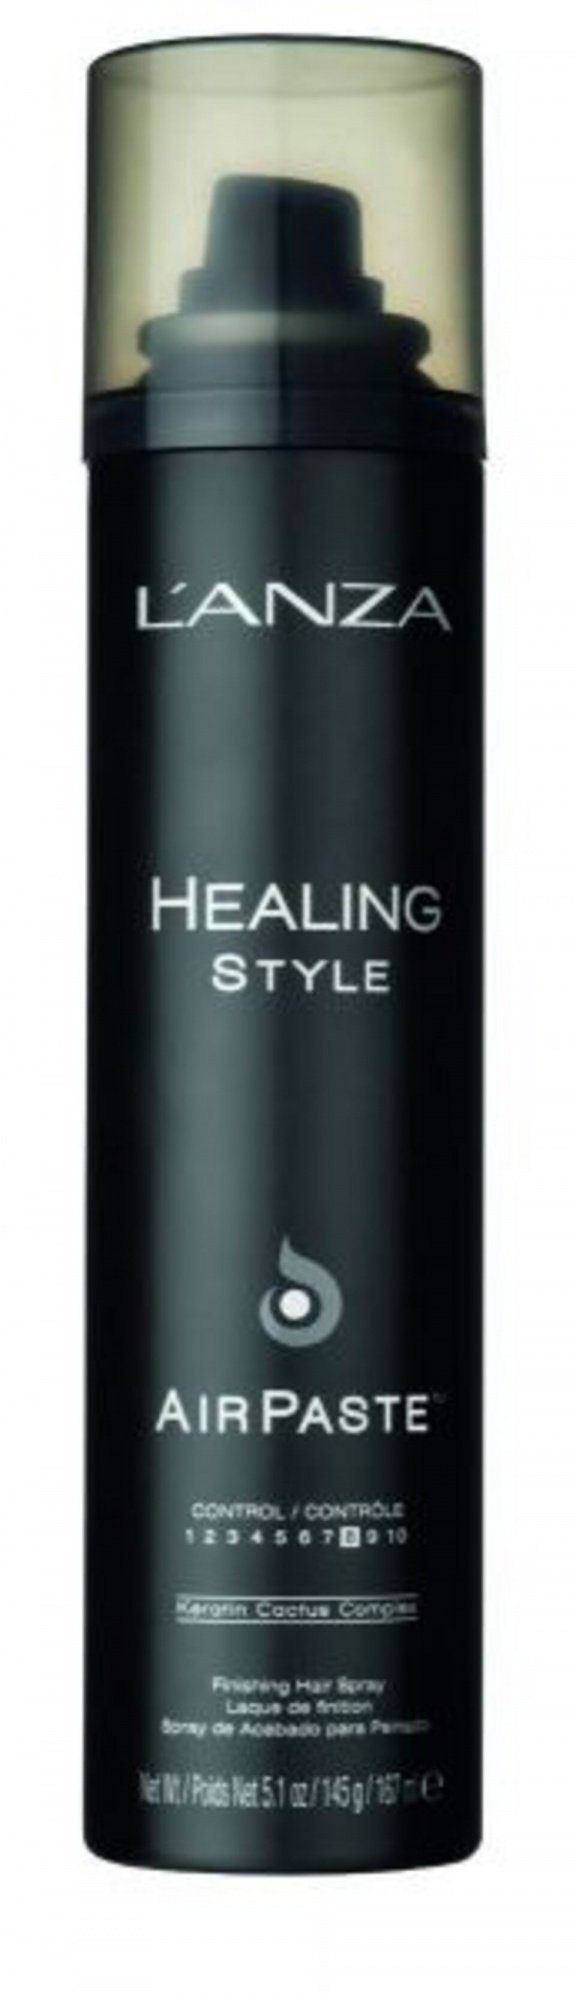 167 Haarspray ml, Style 1-tlg., in Lanza Textur, Stylingpaste Air Paste Definition Healing Sprayform, Volumen,